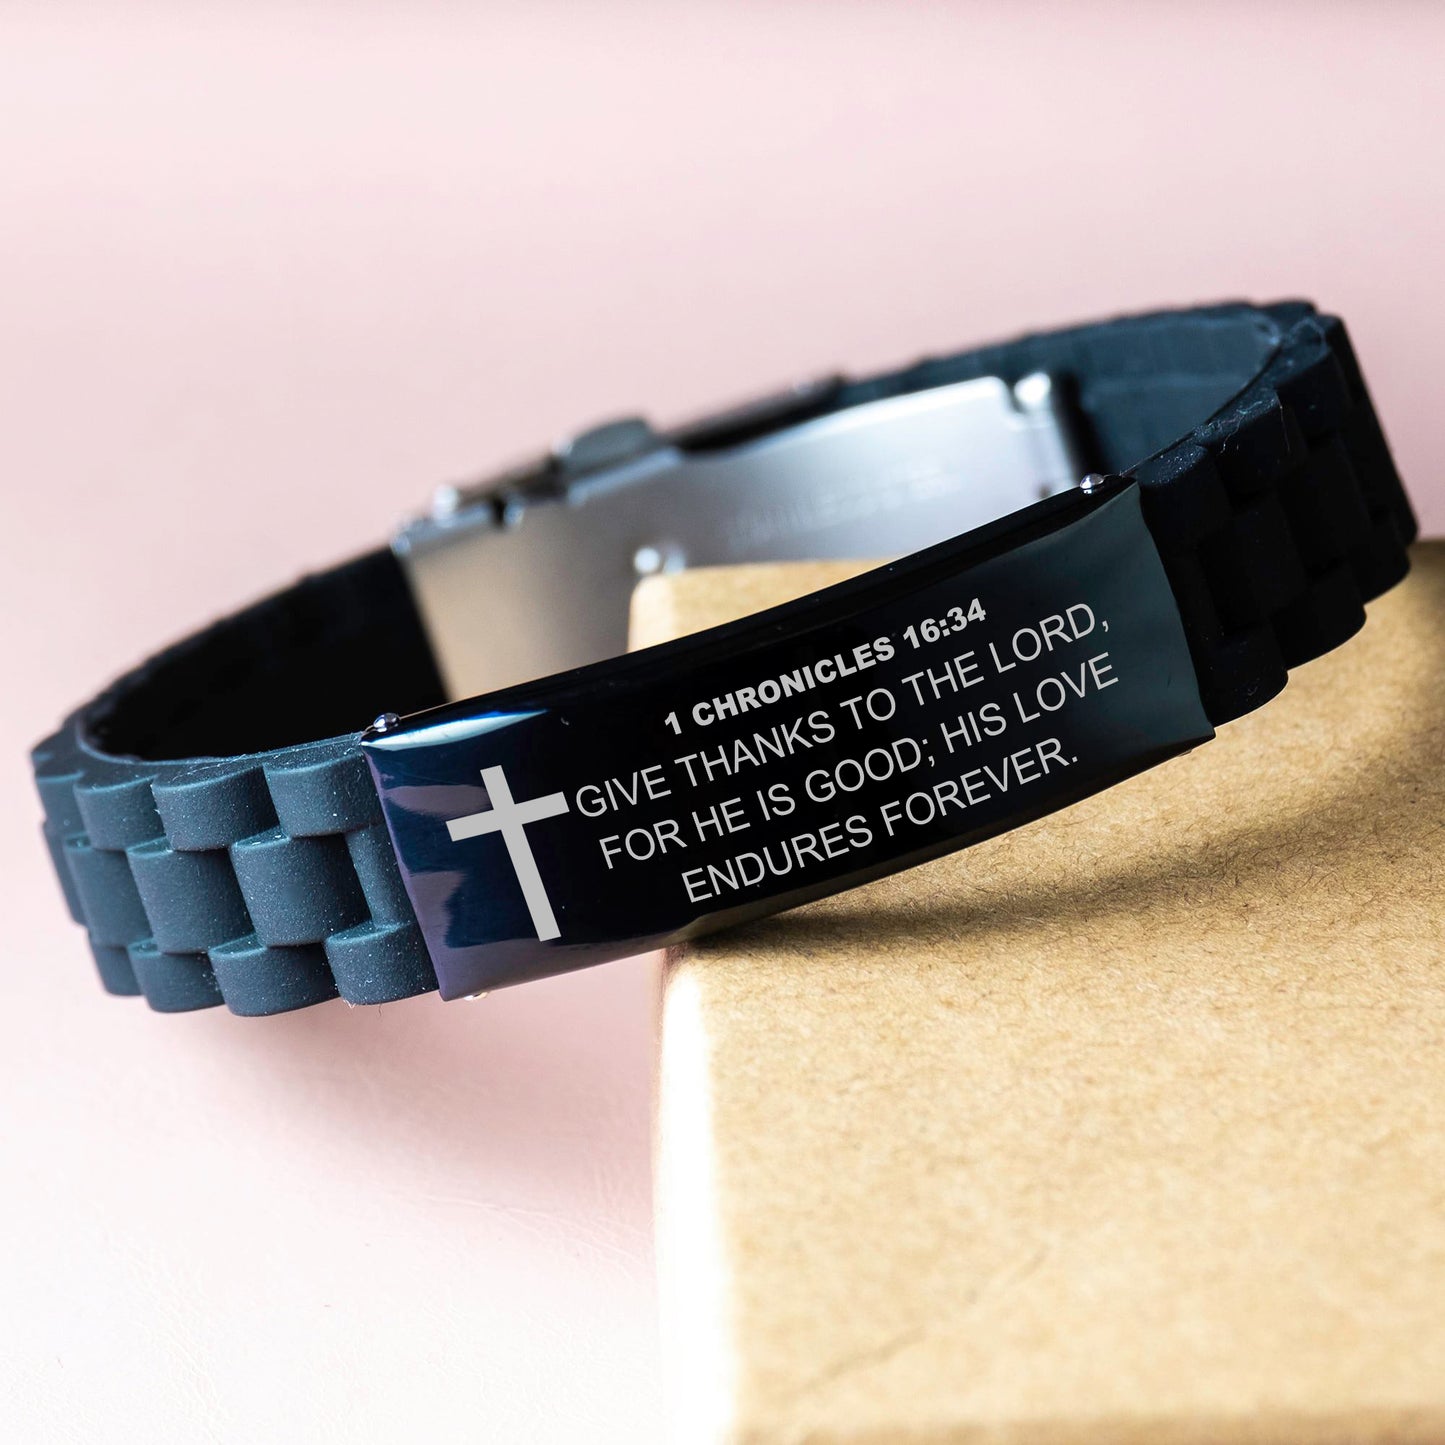 1 Chronicles 16 34 Bracelet, Bible Verse Bracelet, Christian Bracelet, Black Stainless Steel Silicone Bracelet, Gift for Christian